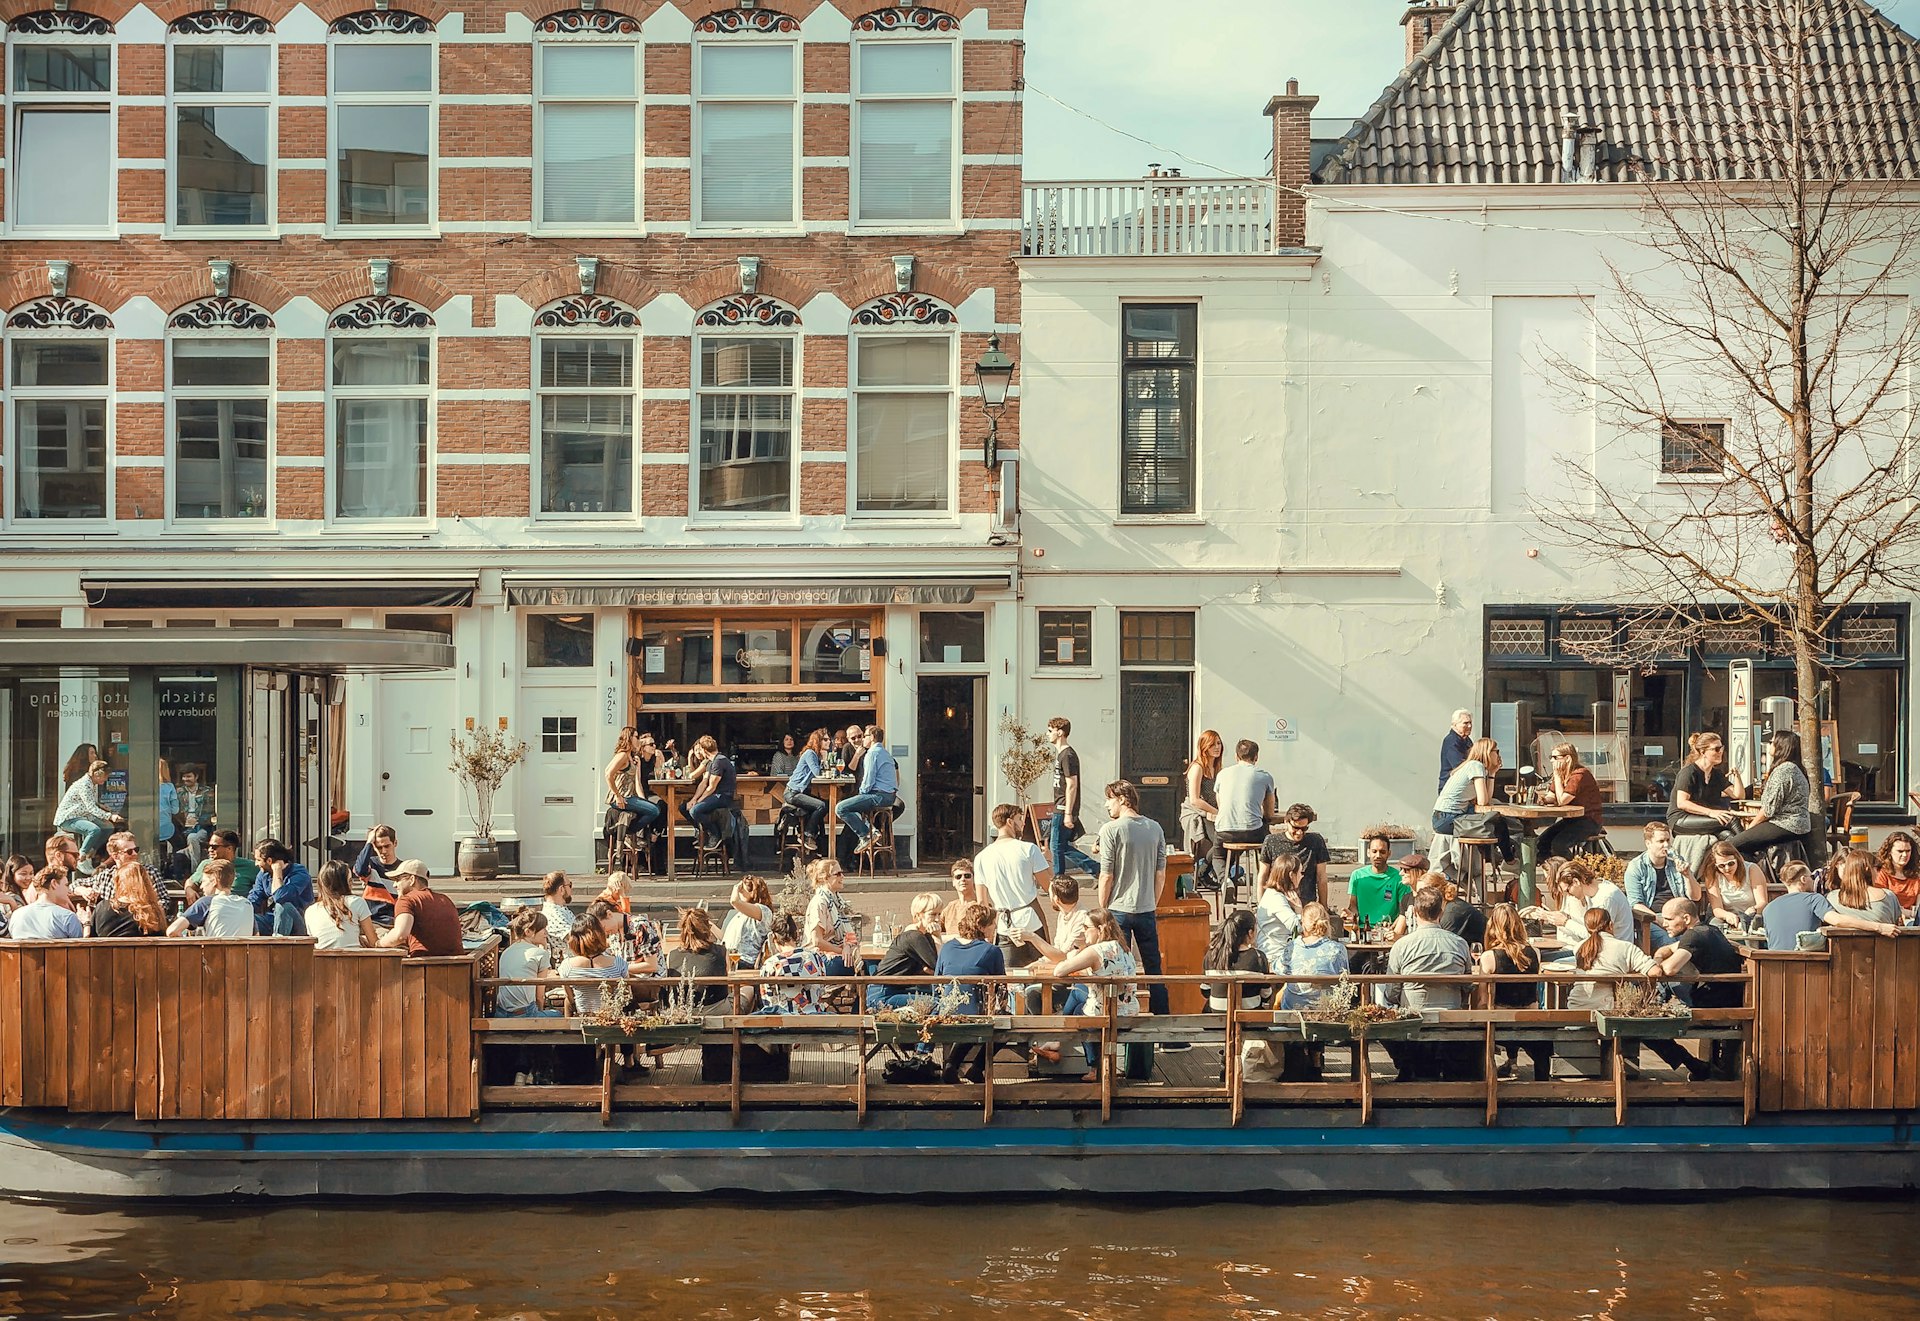 Толпы людей едят и пьют возле речного кафе "Виноград и оливки" на берегу канала в Гааге, Нидерланды.